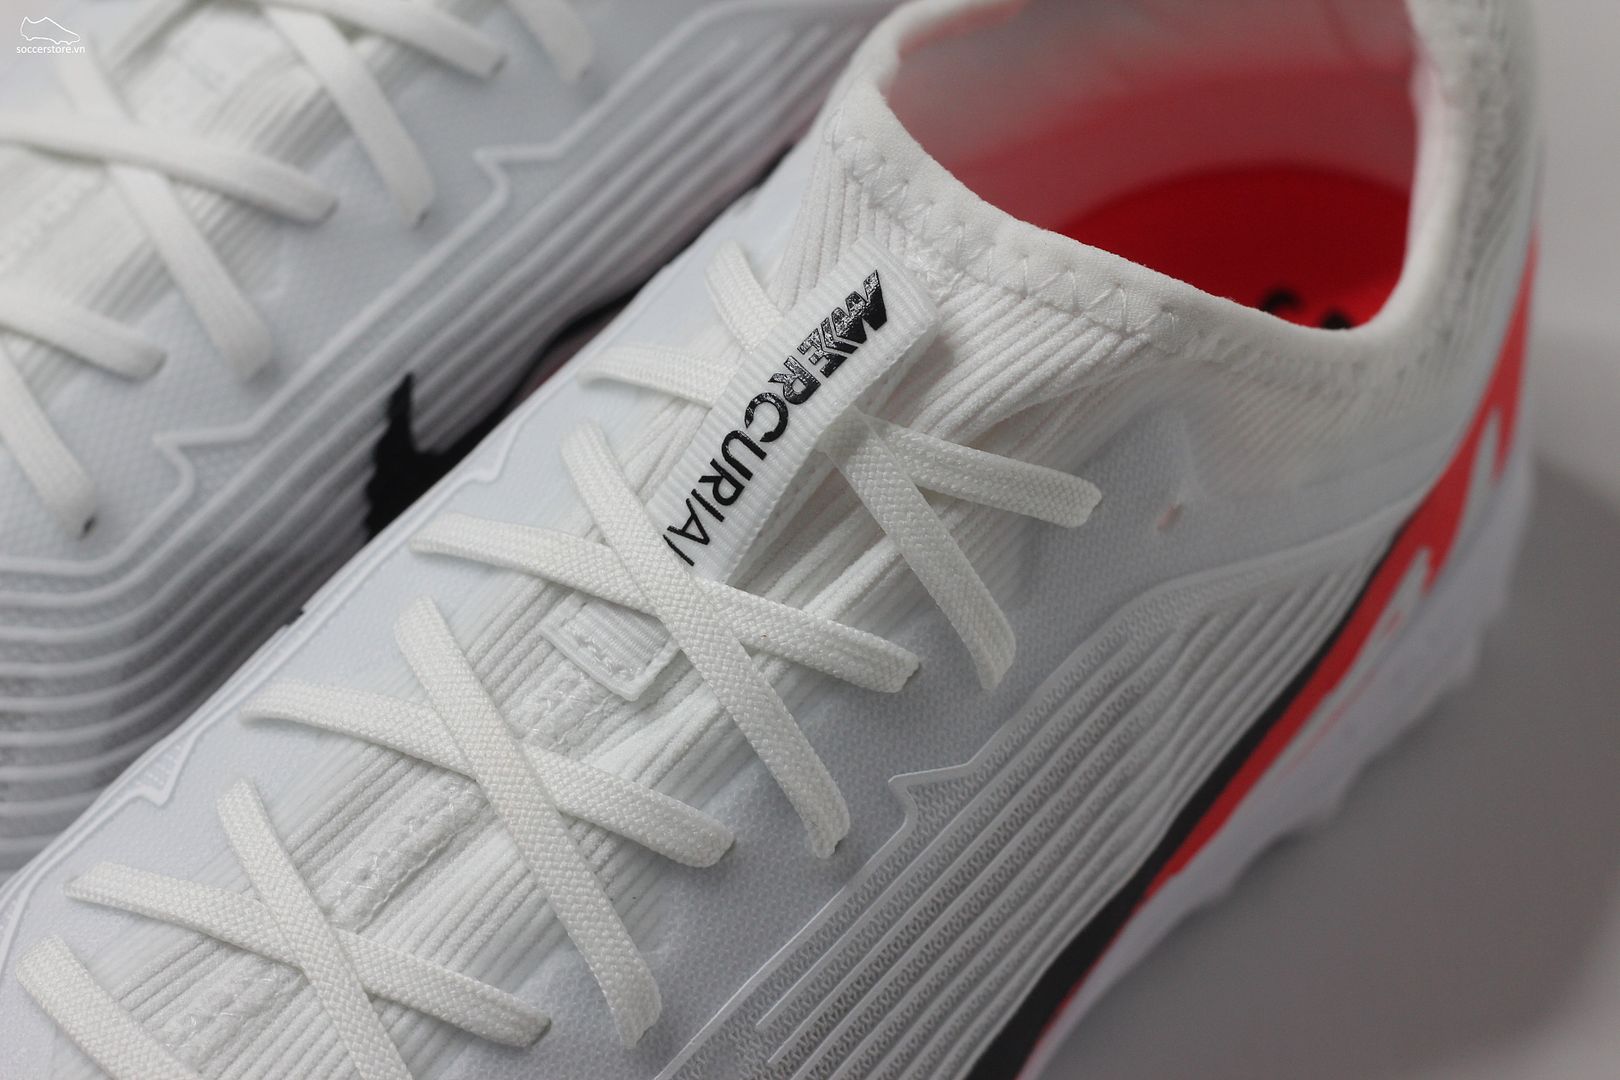 Nike Mercurial Vapor 15 Pro TF Air Zoom trắng đỏ- Ready pack DJ5605-600